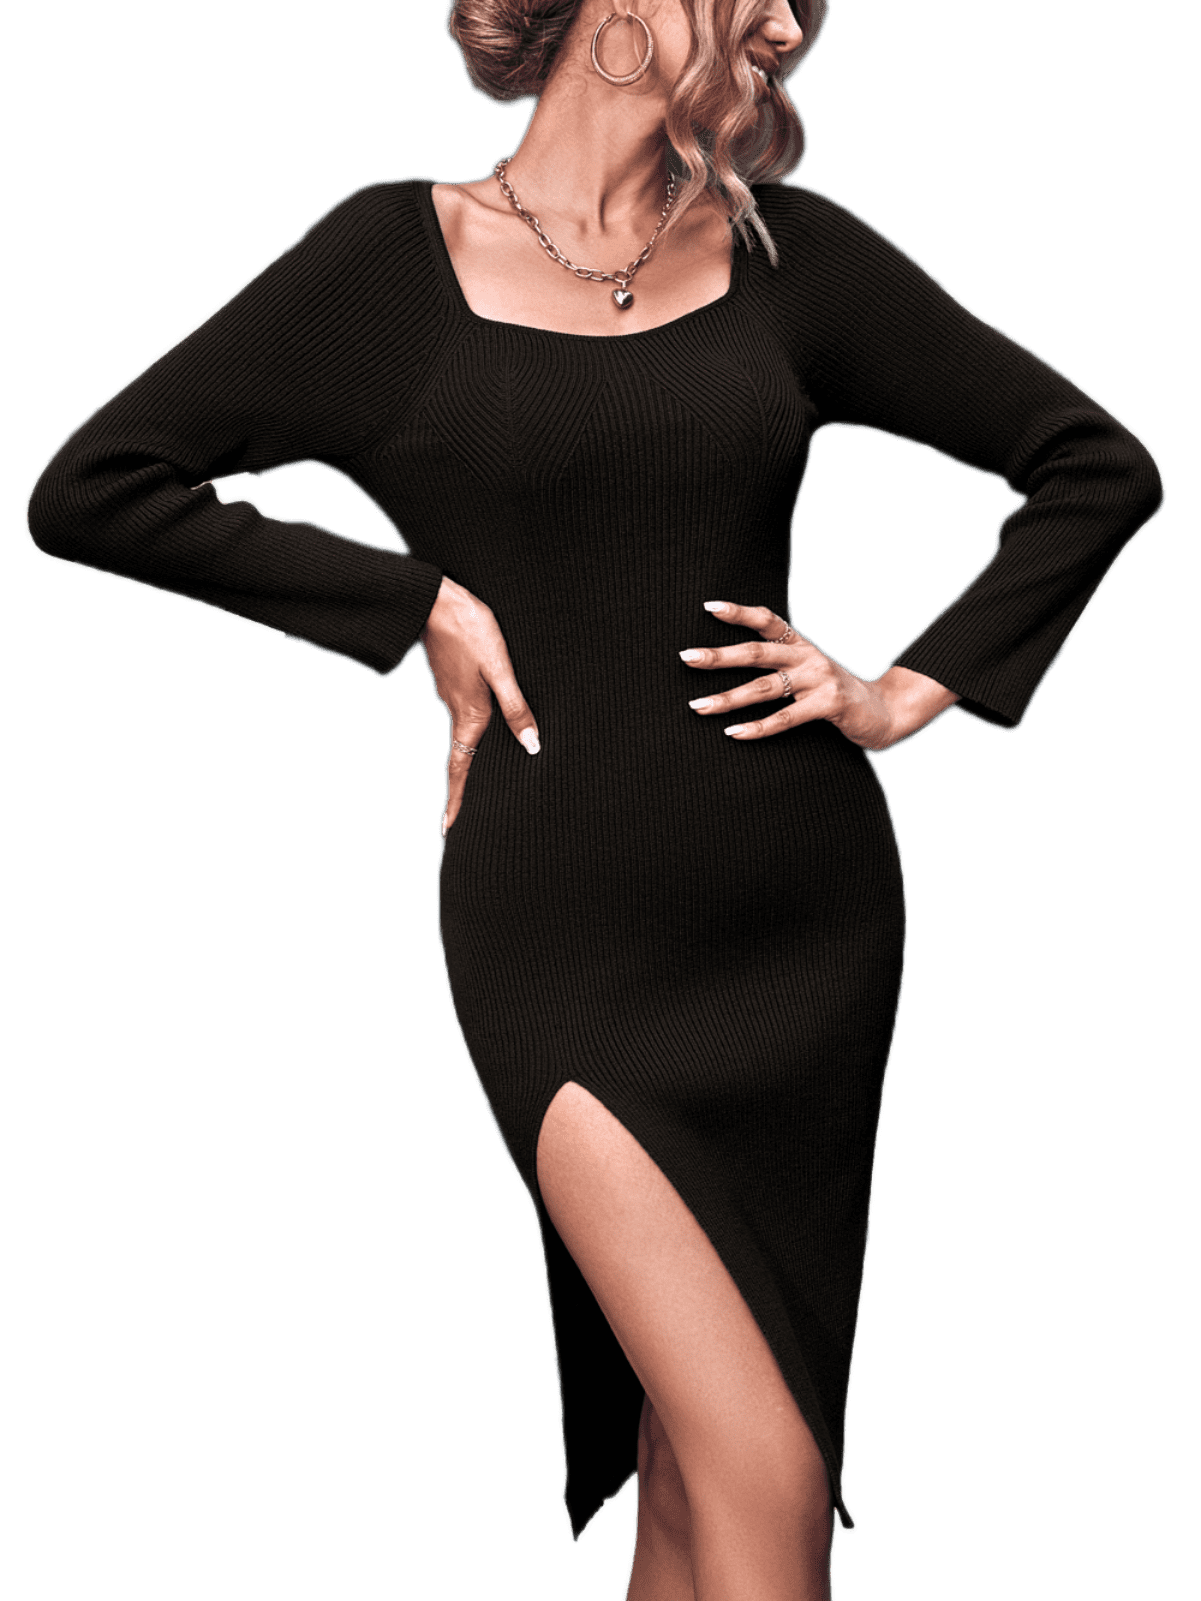 BERTHMEER Women's Sweater Dress Knit Dress 30% Wool Bodycon, Black